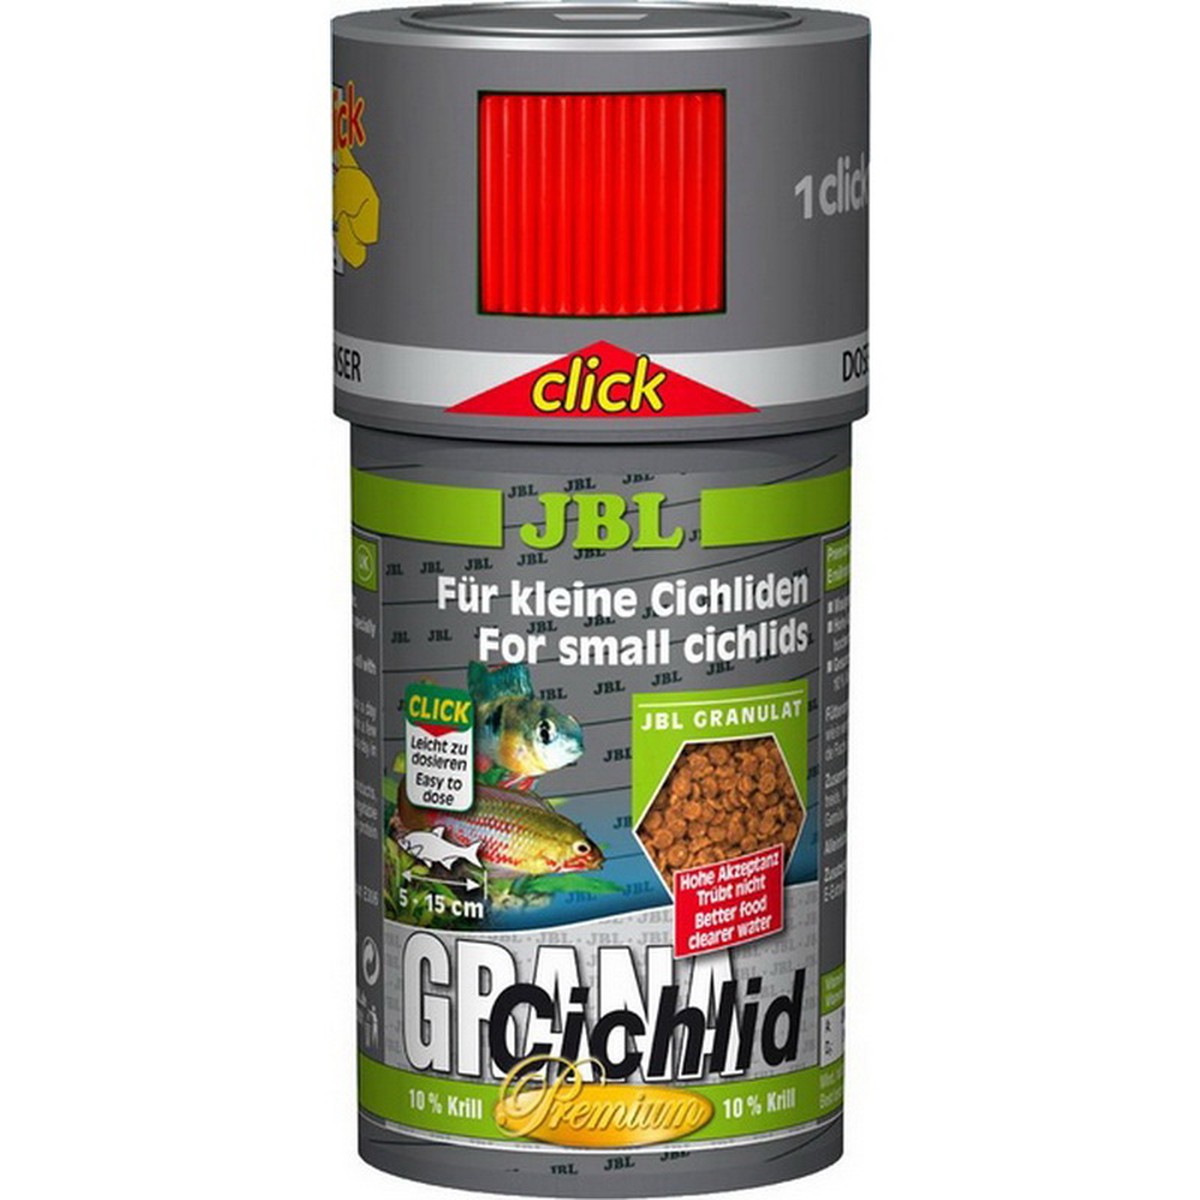   JBL Grana-Cichlid (CLICK) 250ml  F/NL  250ml